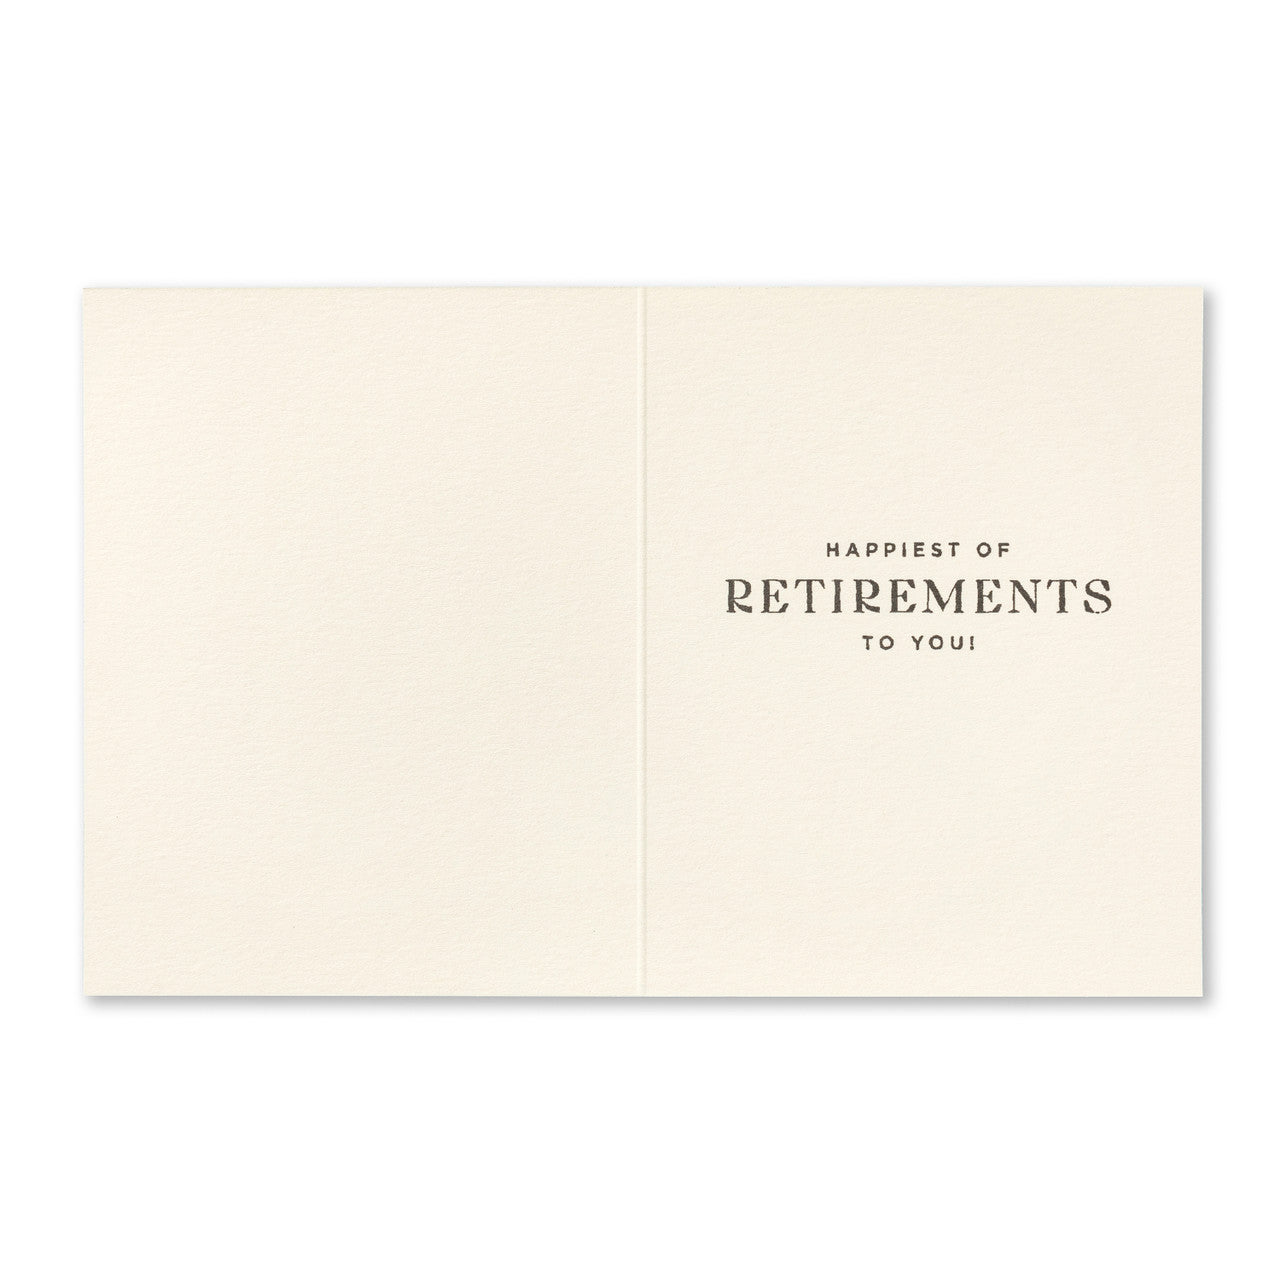 Retirement Card - You deserve it